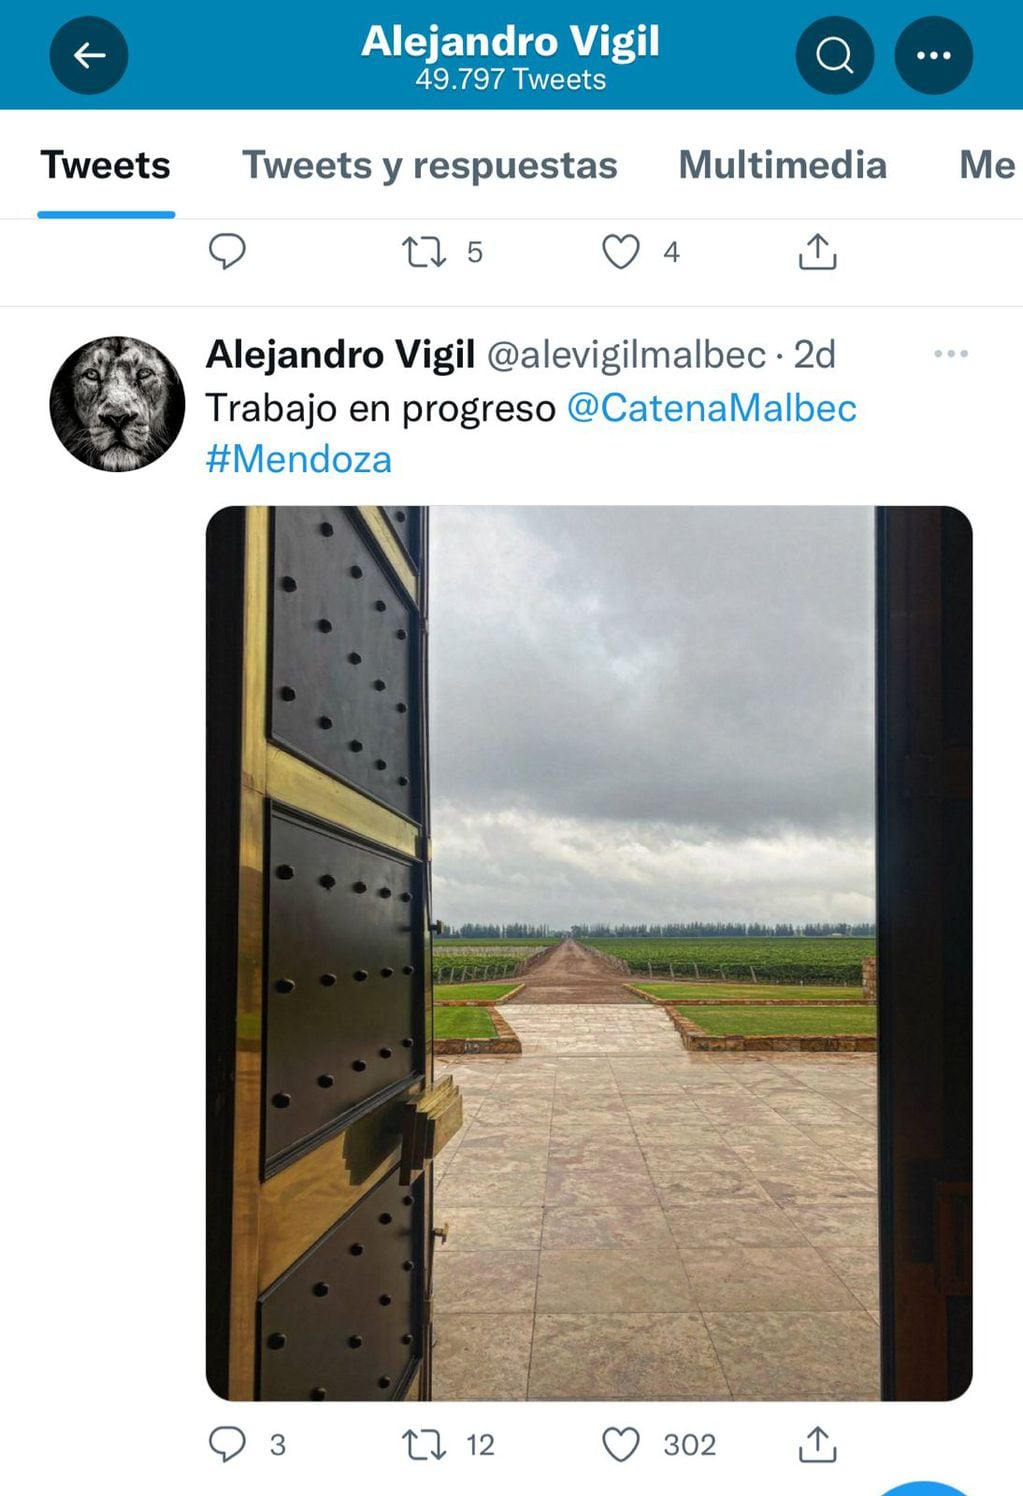 Las publicaciones de Alejandro Vigil en Twitter deslumbran a los usuarios.